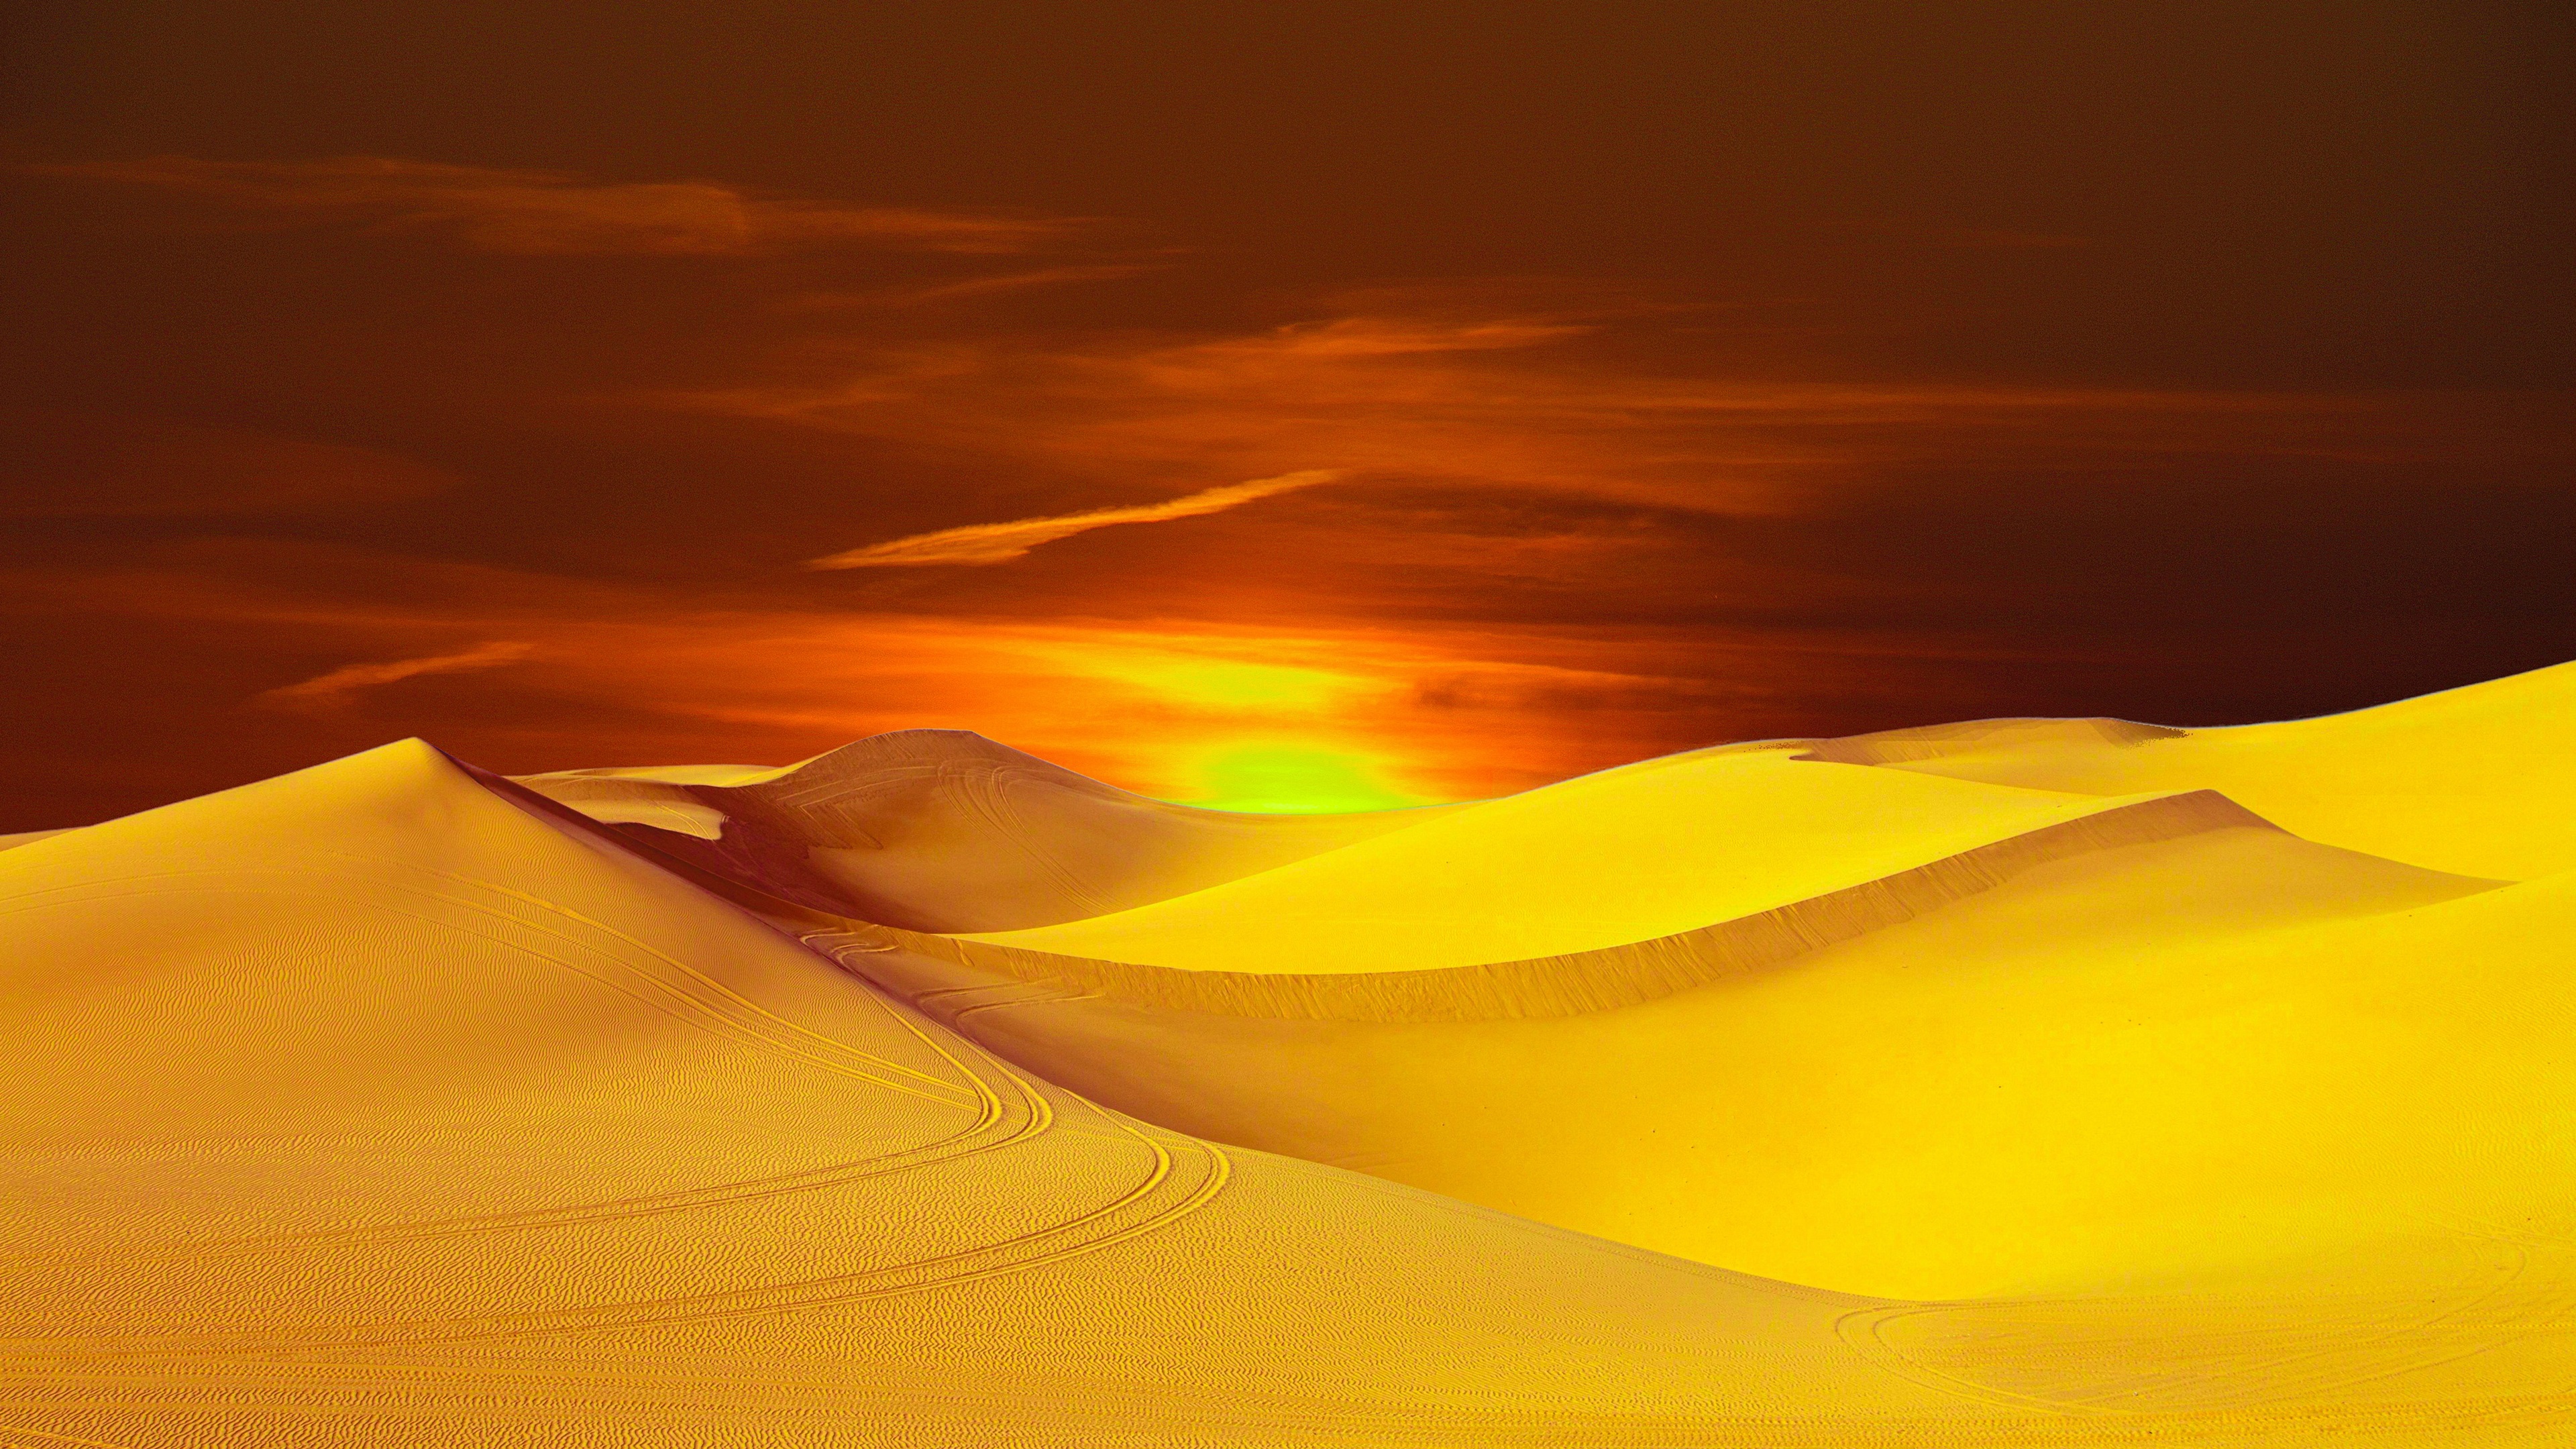 General 3840x2160 desert sand sunlight nature warm yellow landscape sunset